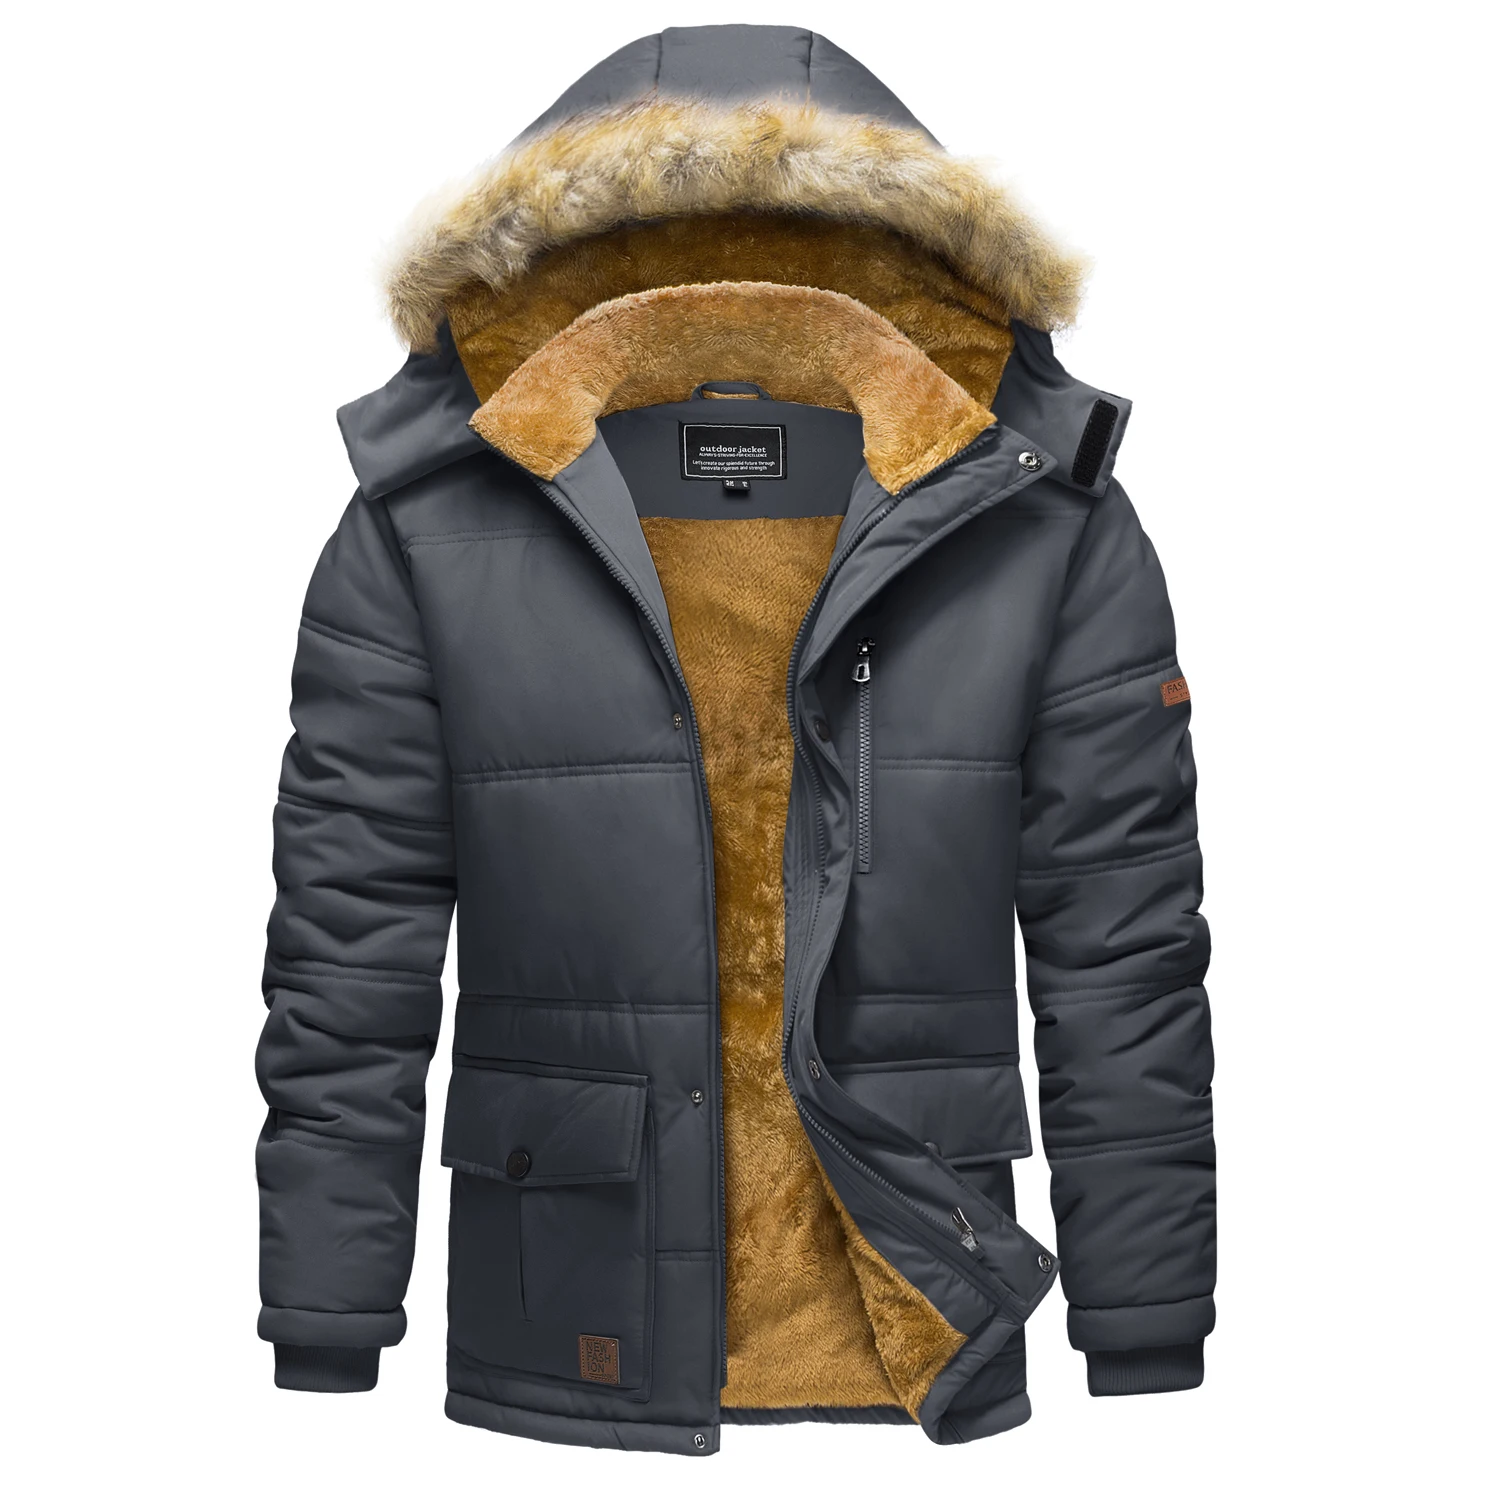 Mens Winter Fleece Jacket Hiking Ski Snowboard Hooded Coats Thicken Jackets Multi-pockets Outwear